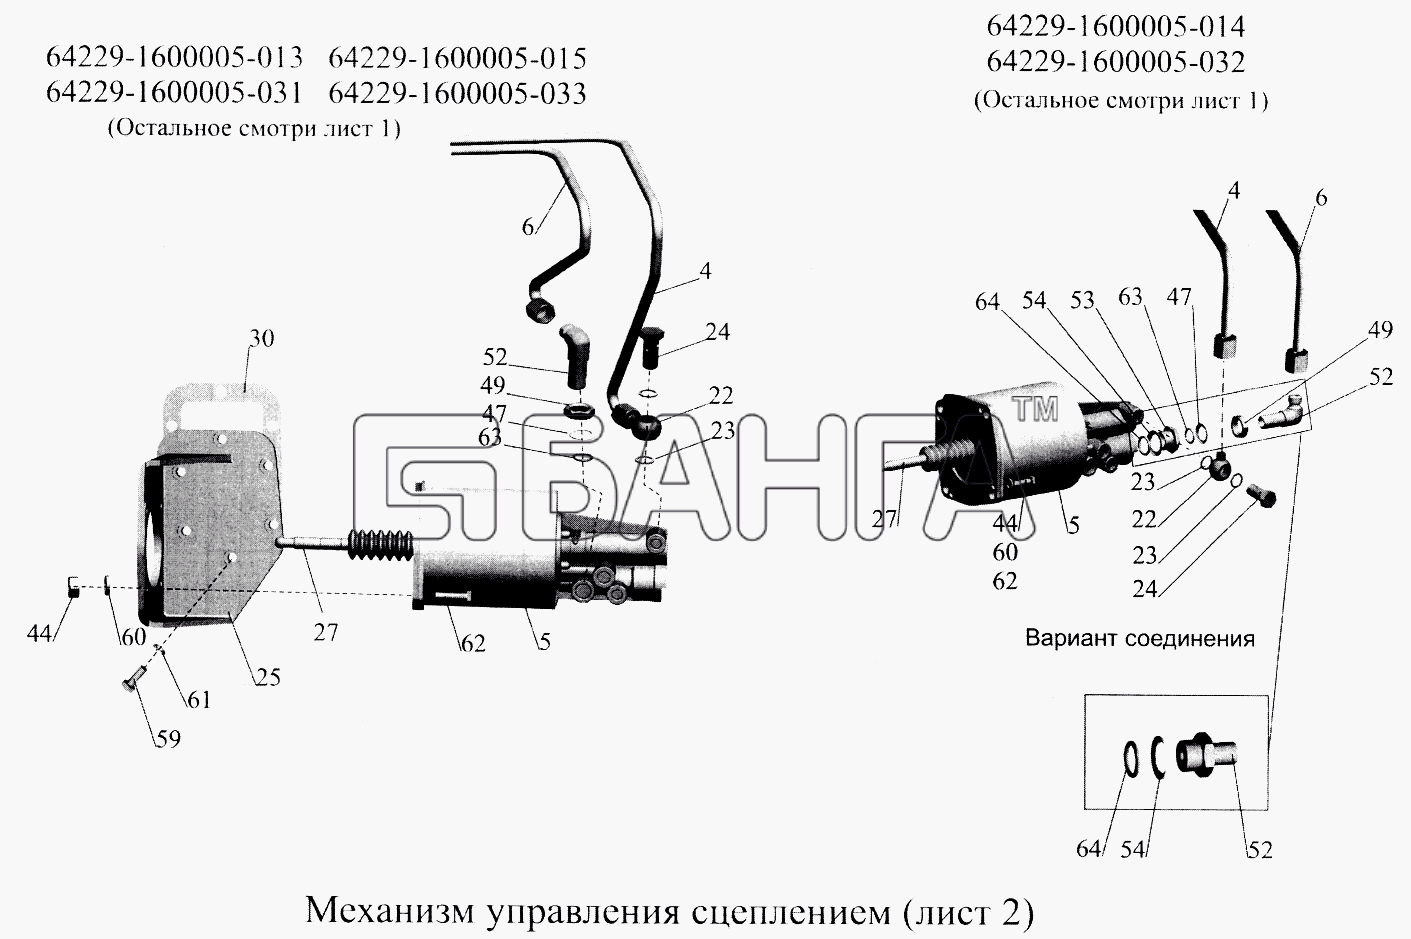 МАЗ МАЗ-5516А5 Схема Механизм управления сцеплением-114 banga.ua